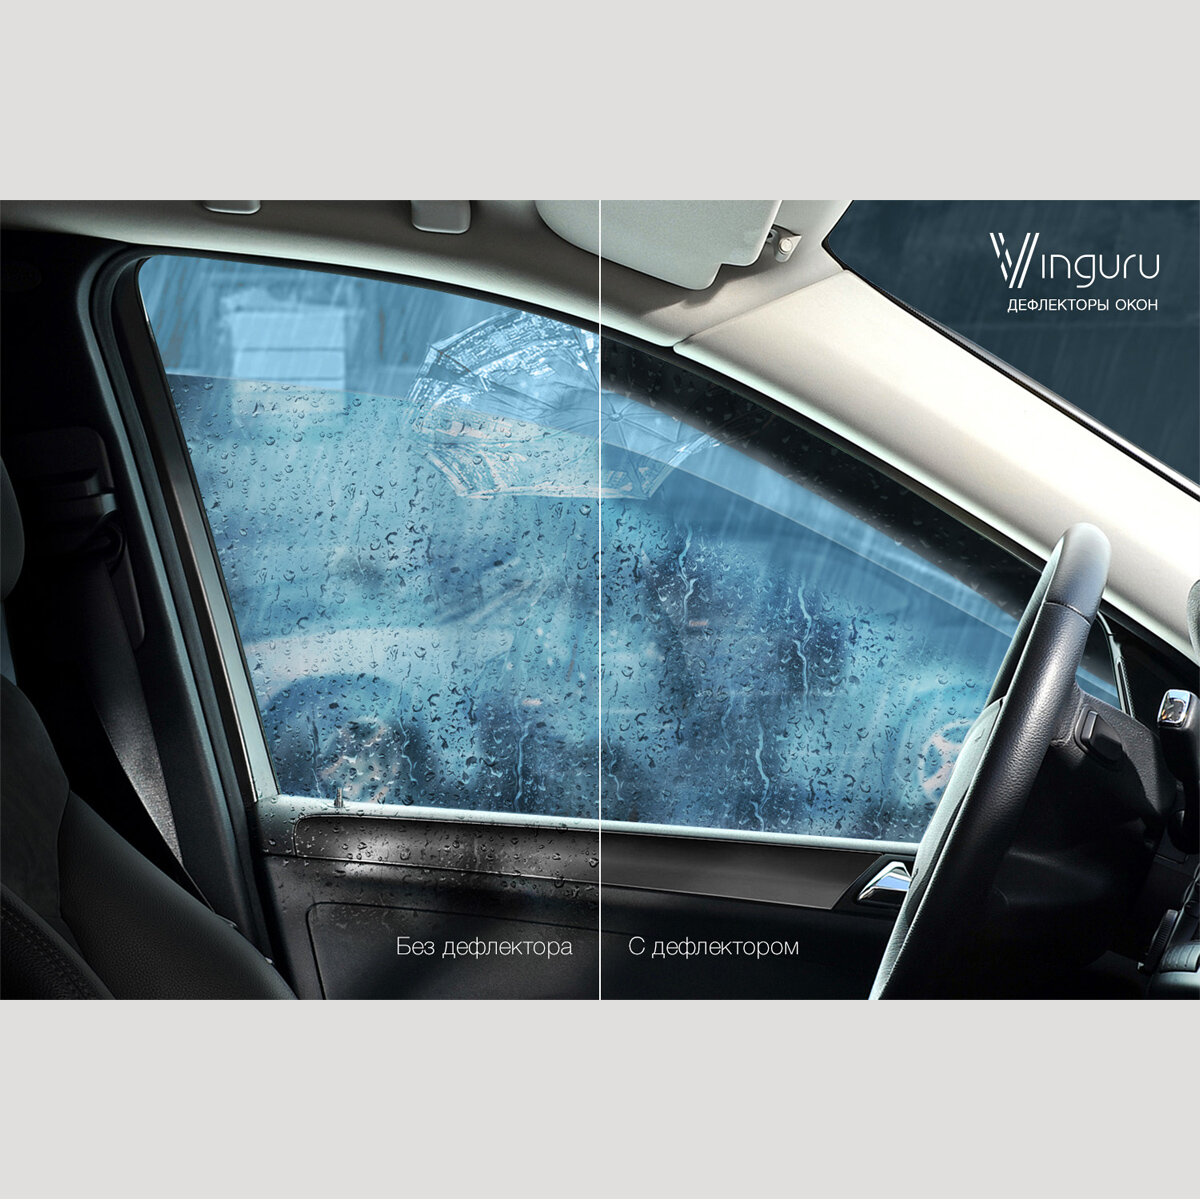 Дефлекторы окон Vinguru Ford Focus III 2011- седан накладные литьевой поликарбонат скотч 4 шт - фото №16